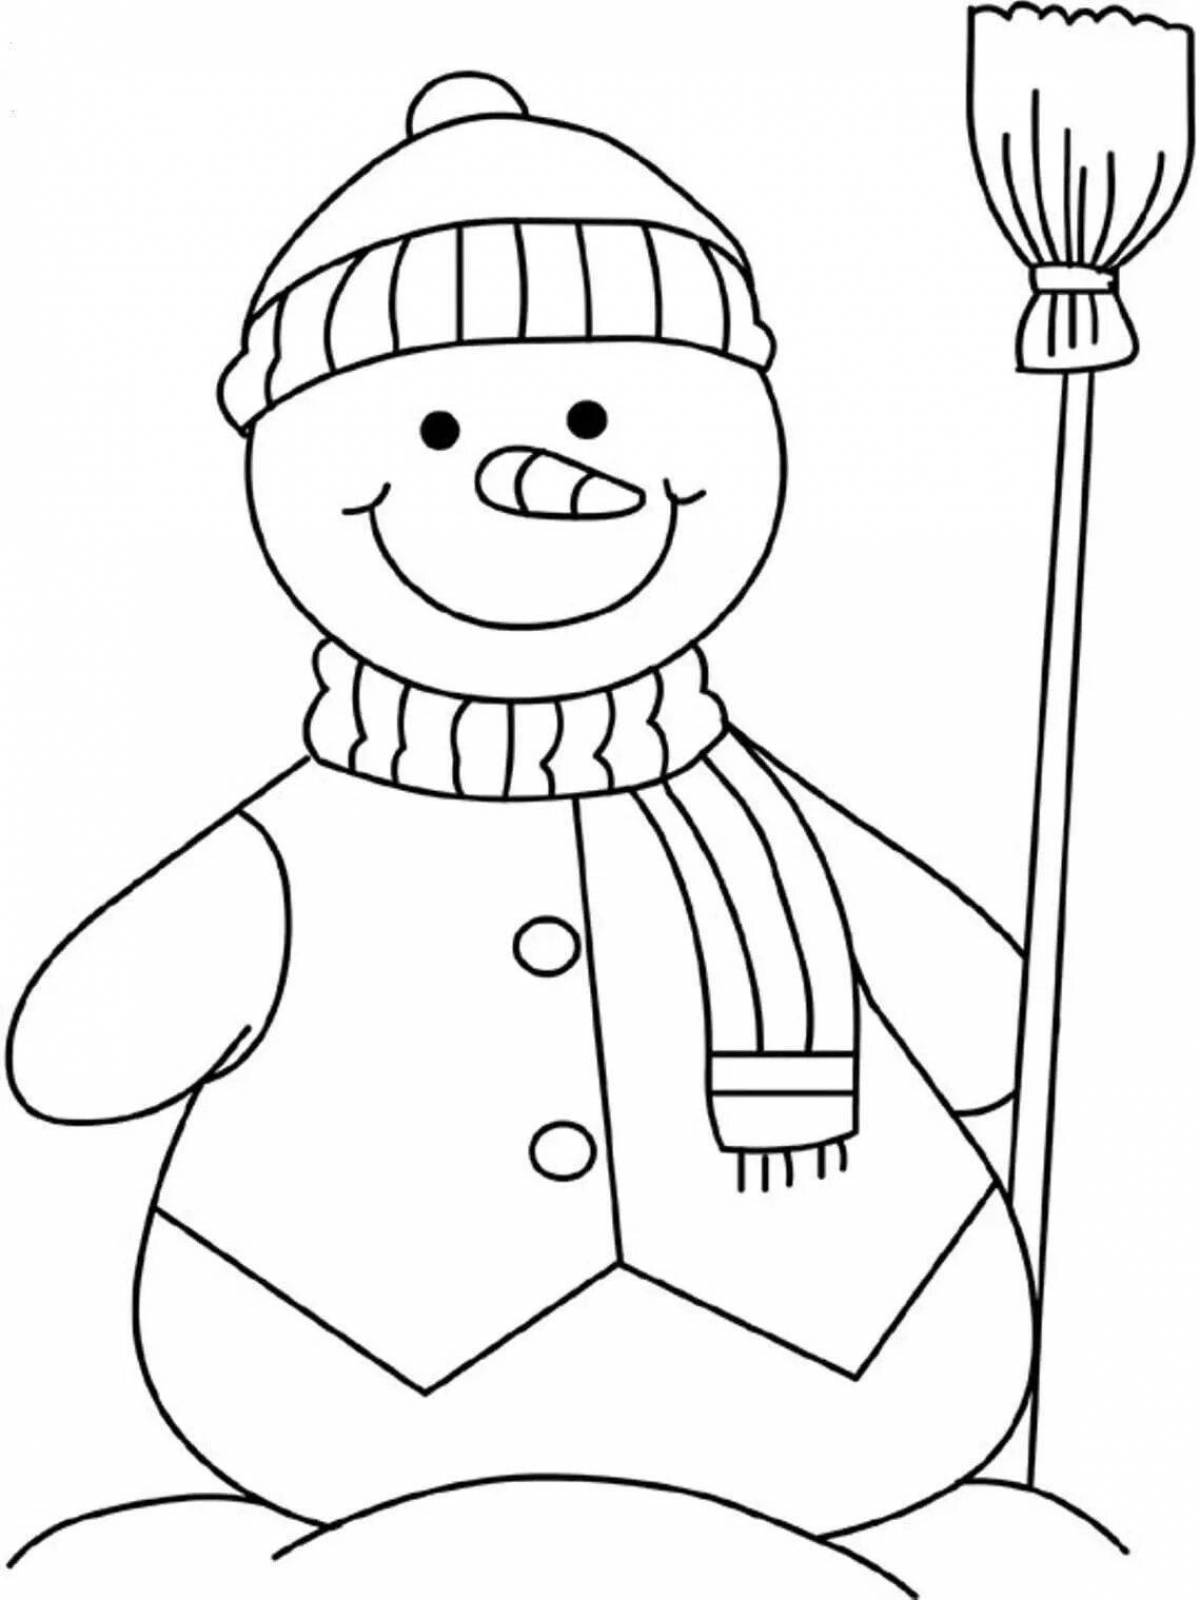 Радостный рисунок снеговика для детей